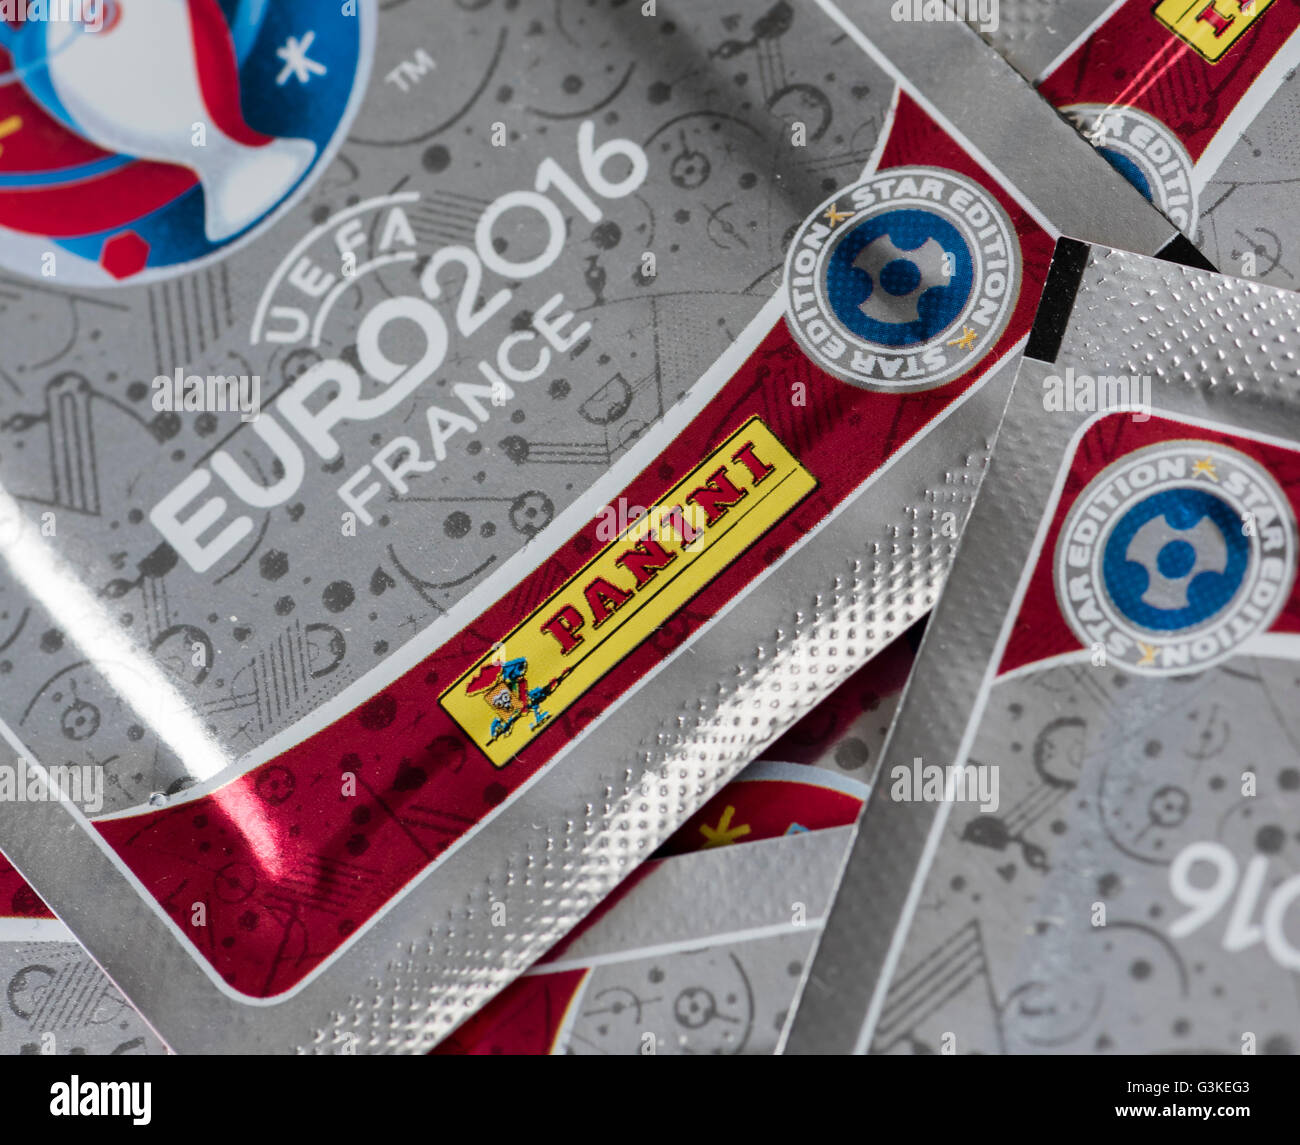 Vue rapprochée de brillants, non décachetées paquets contenant les cartes d'échanges Panini pour l'UEFA Euro 2016 de football. Banque D'Images